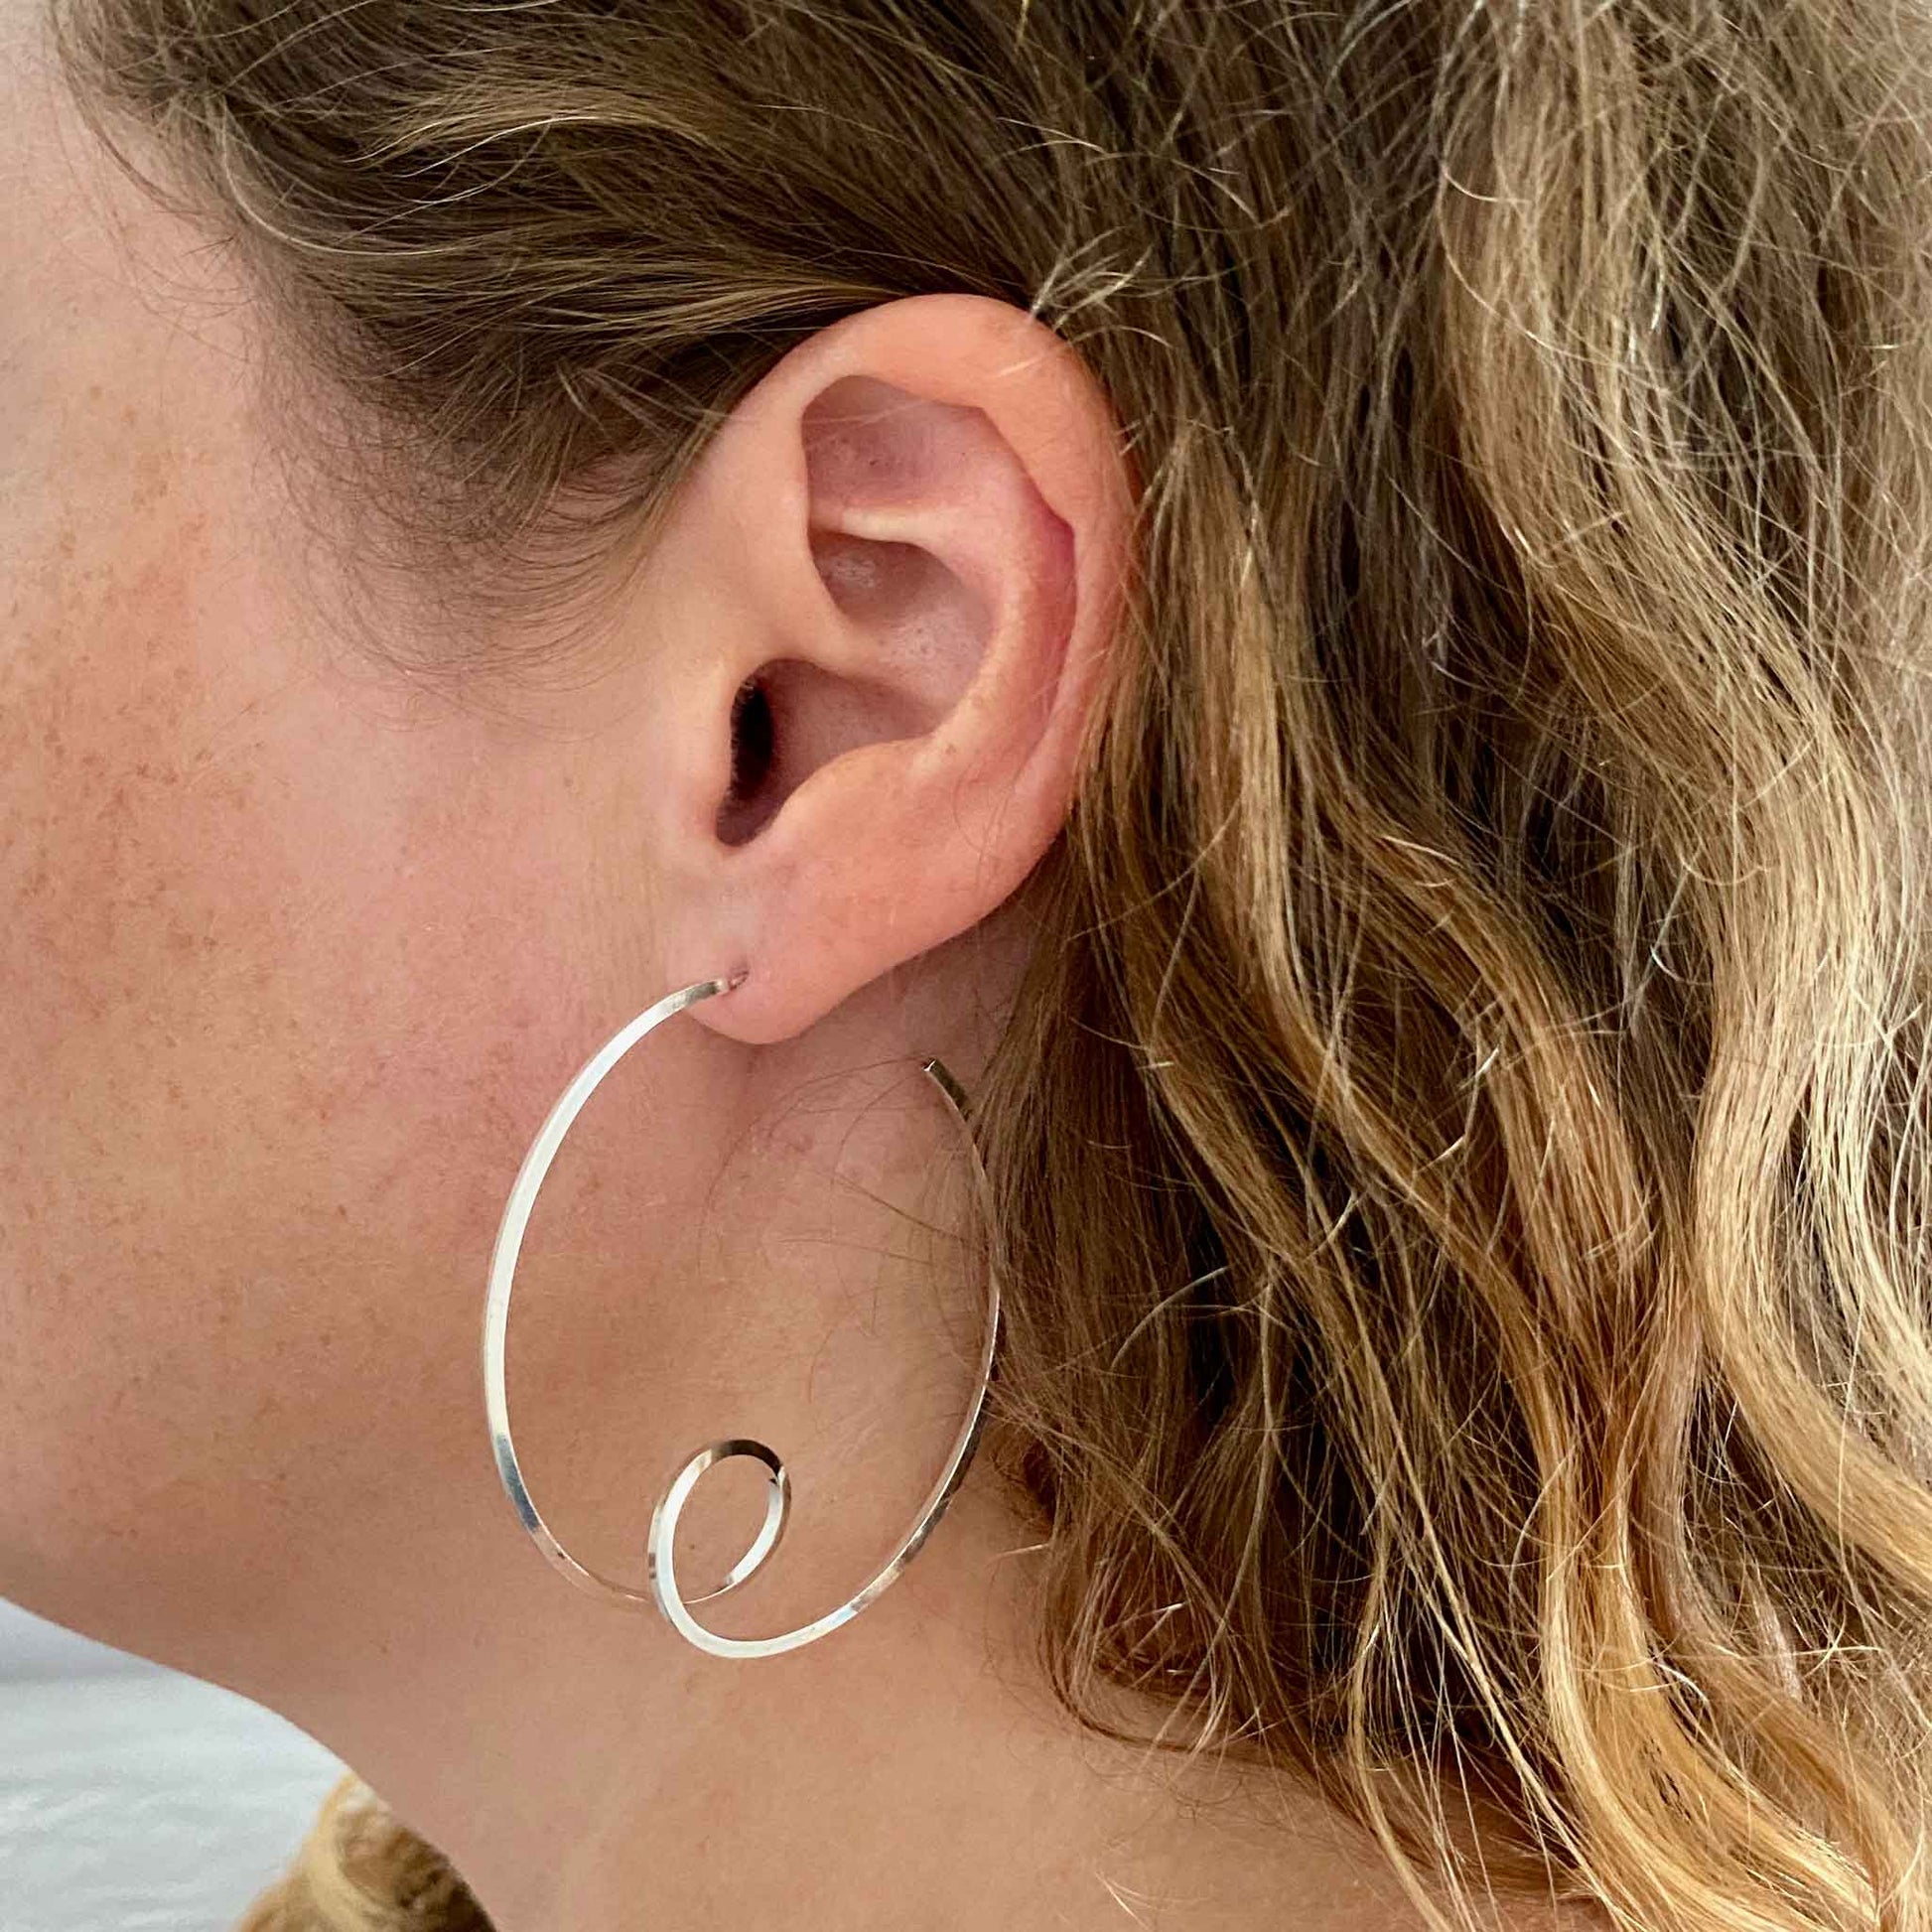 6cm statement Hoop earrings on the ear.